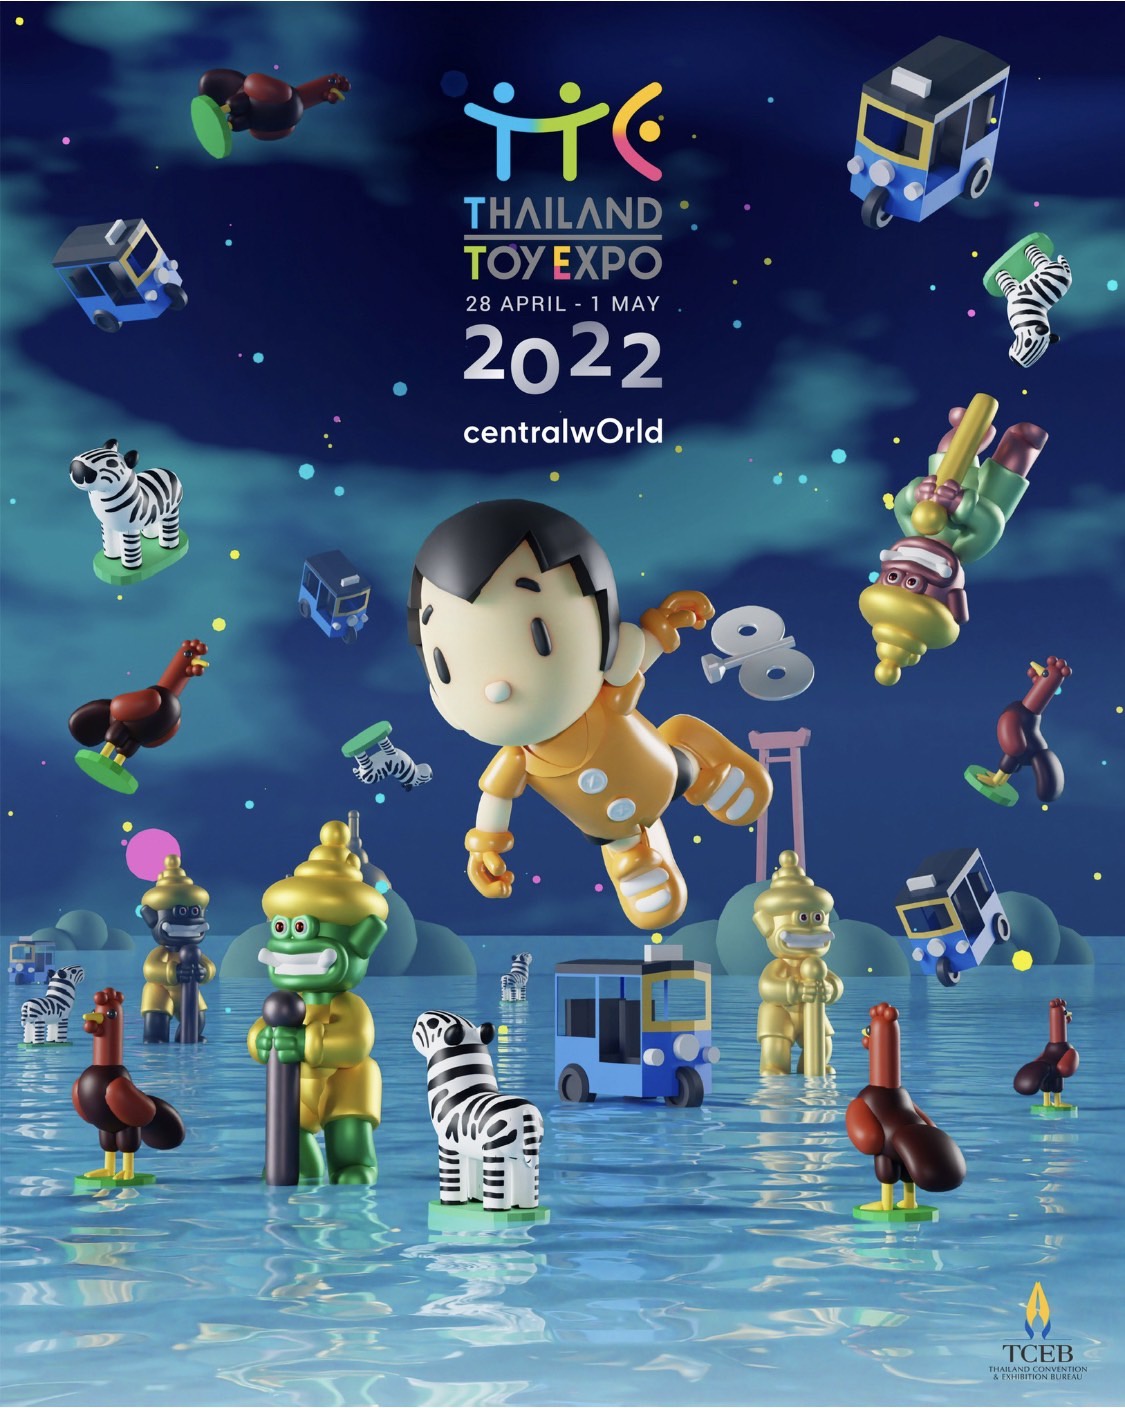 แฟนฟิกเกอร์ นักสะสมของเล่น เตรียมตัวให้พร้อม มหกรรมการแสดงของเล่นระดับโลกที่ยิ่งใหญ่ที่สุด Thailand Toy Expo 2022 เริ่ม 28 เม.ย. - 1 พ.ค.65